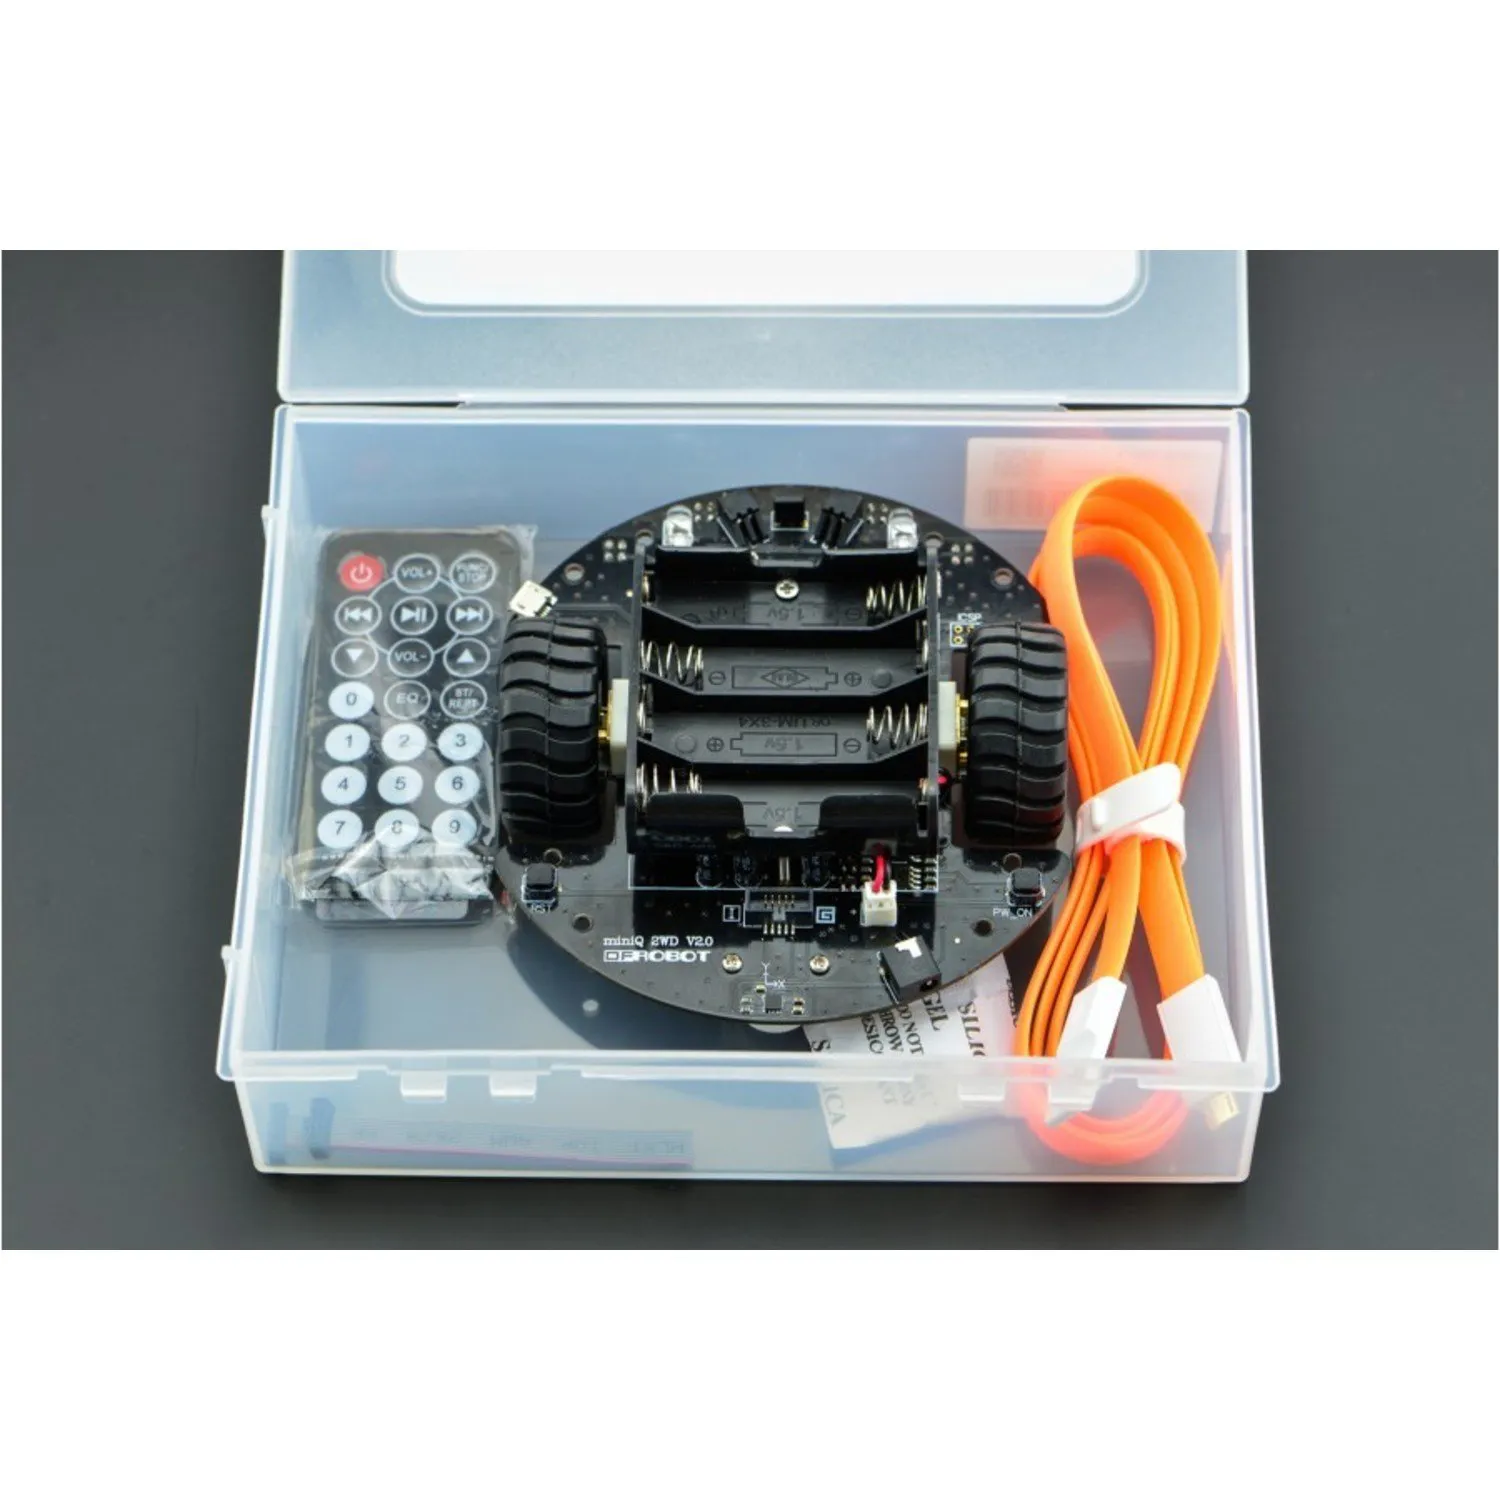 Photo of MiniQ 2WD Complete Kit v2.0 (Arduino Compatible)